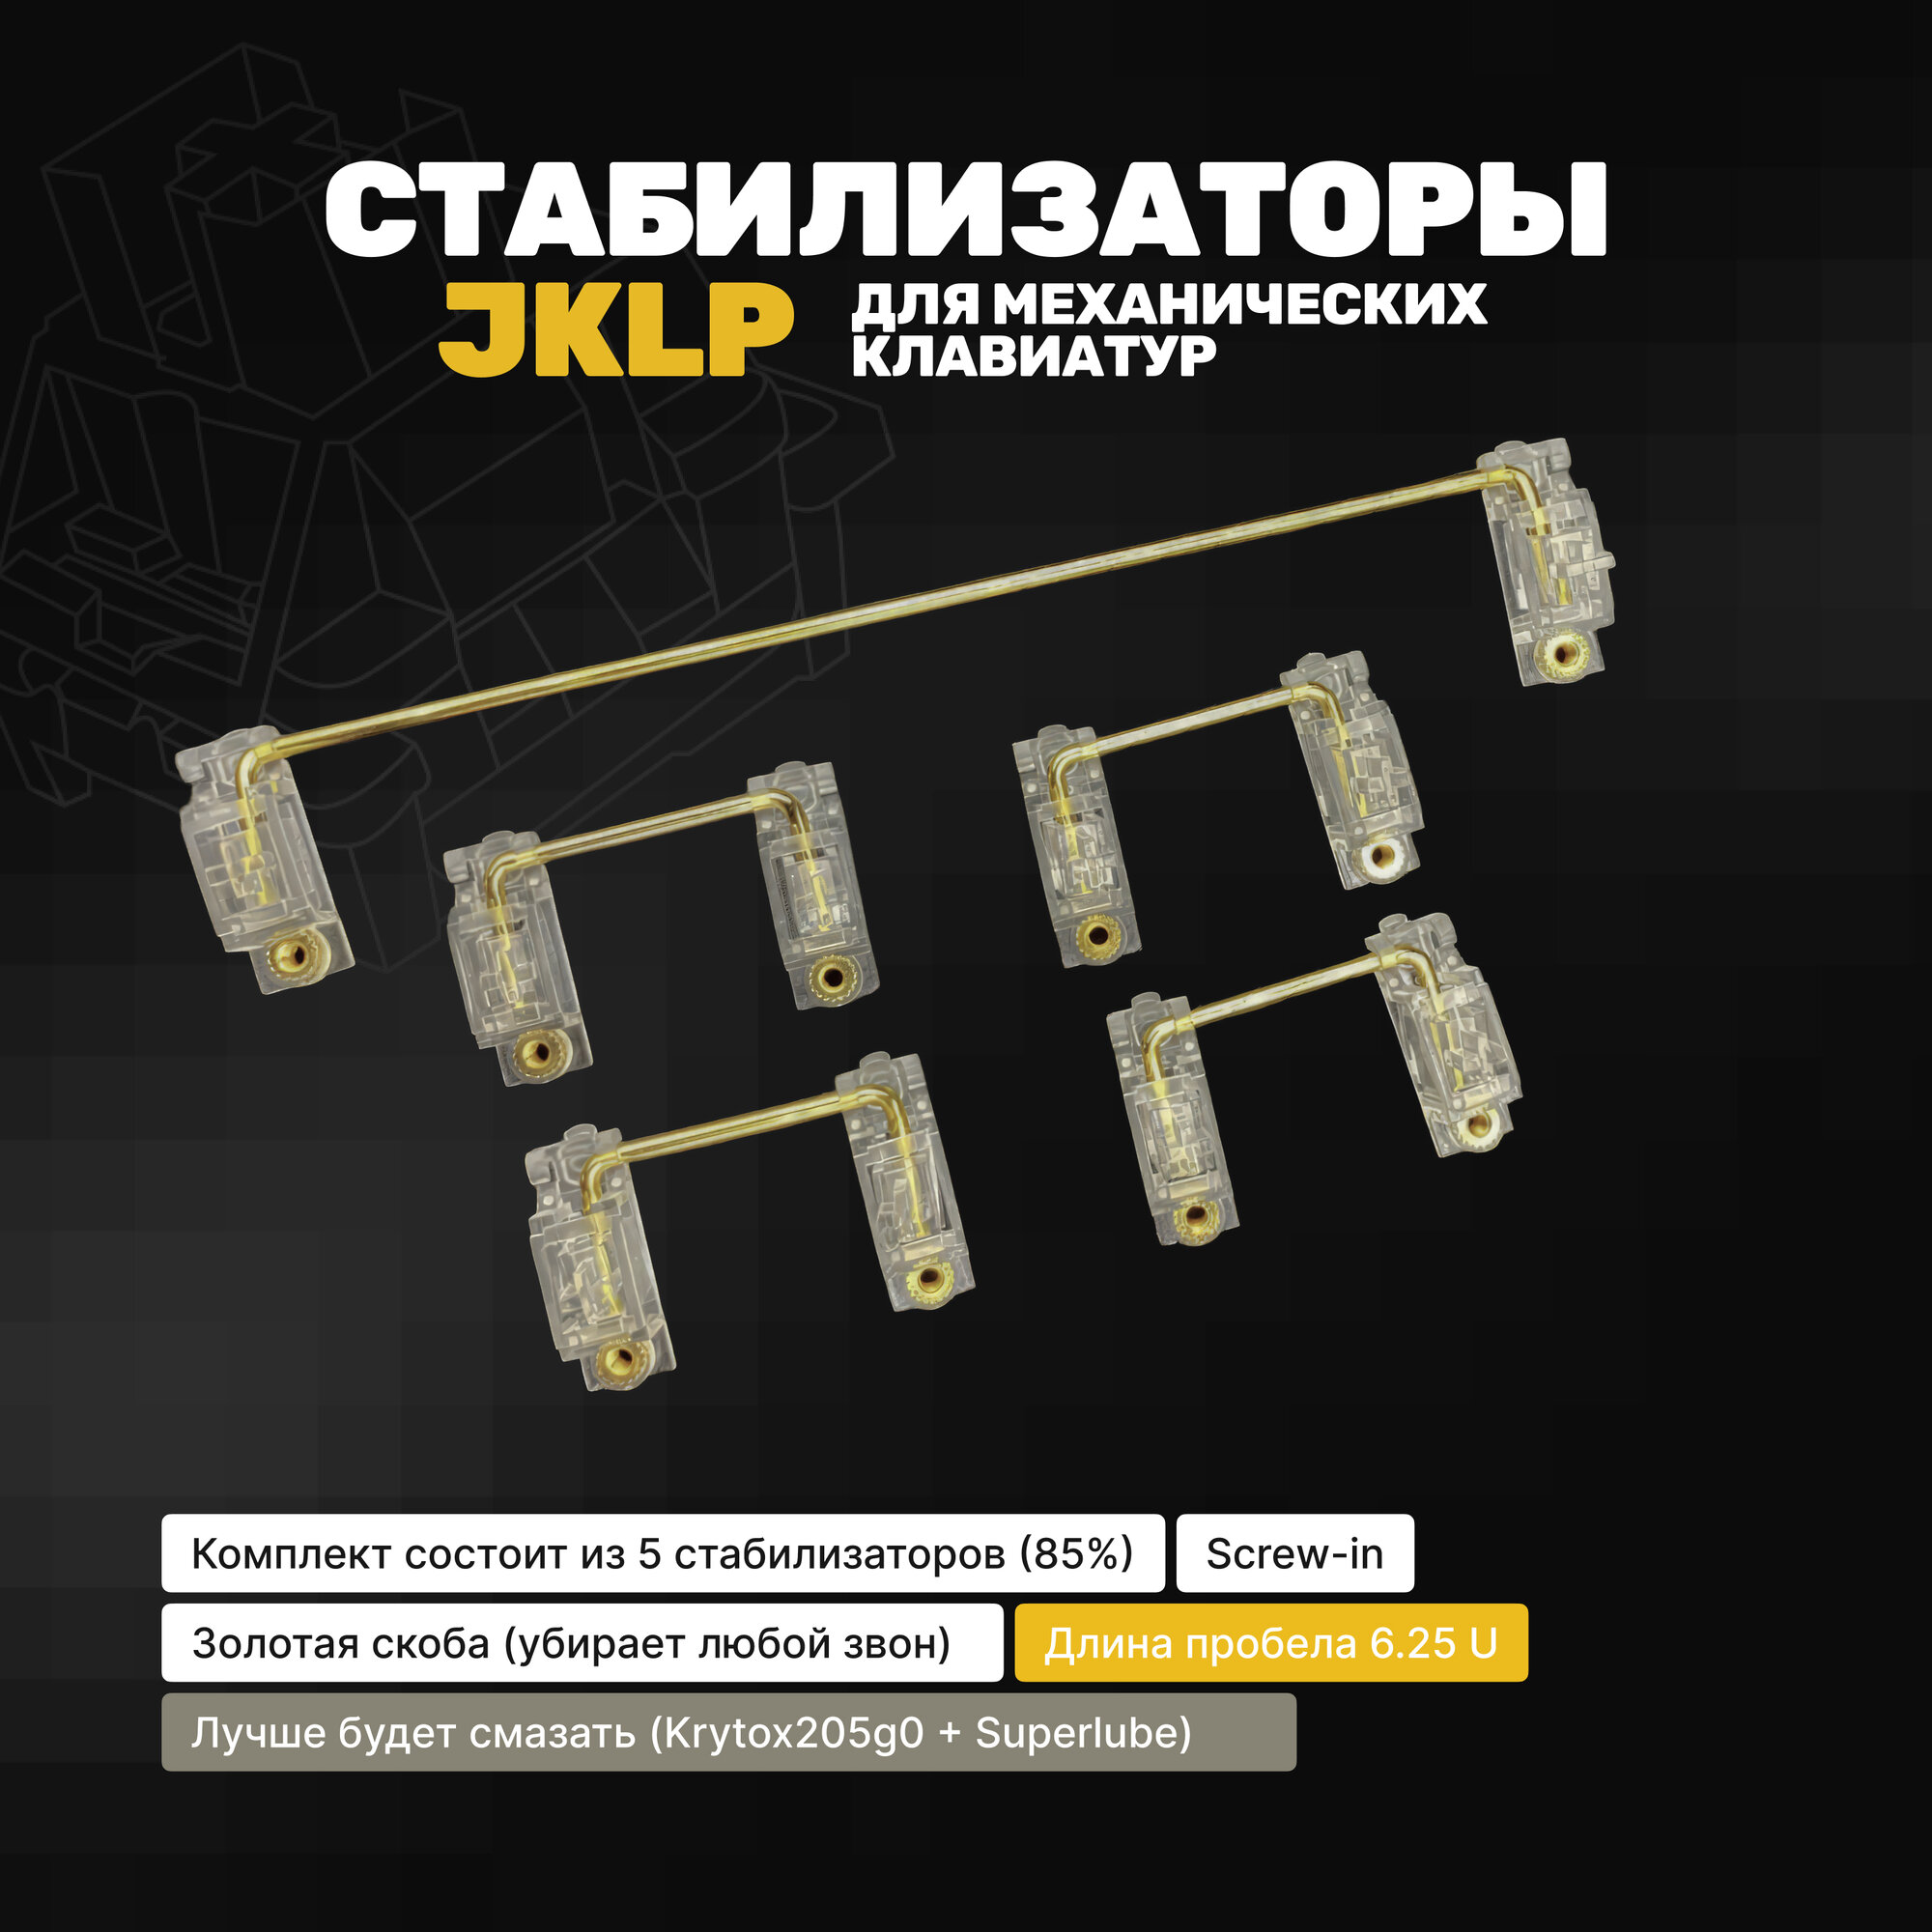 Стабилизаторы JKLP Screw-in для механической клавиатуры